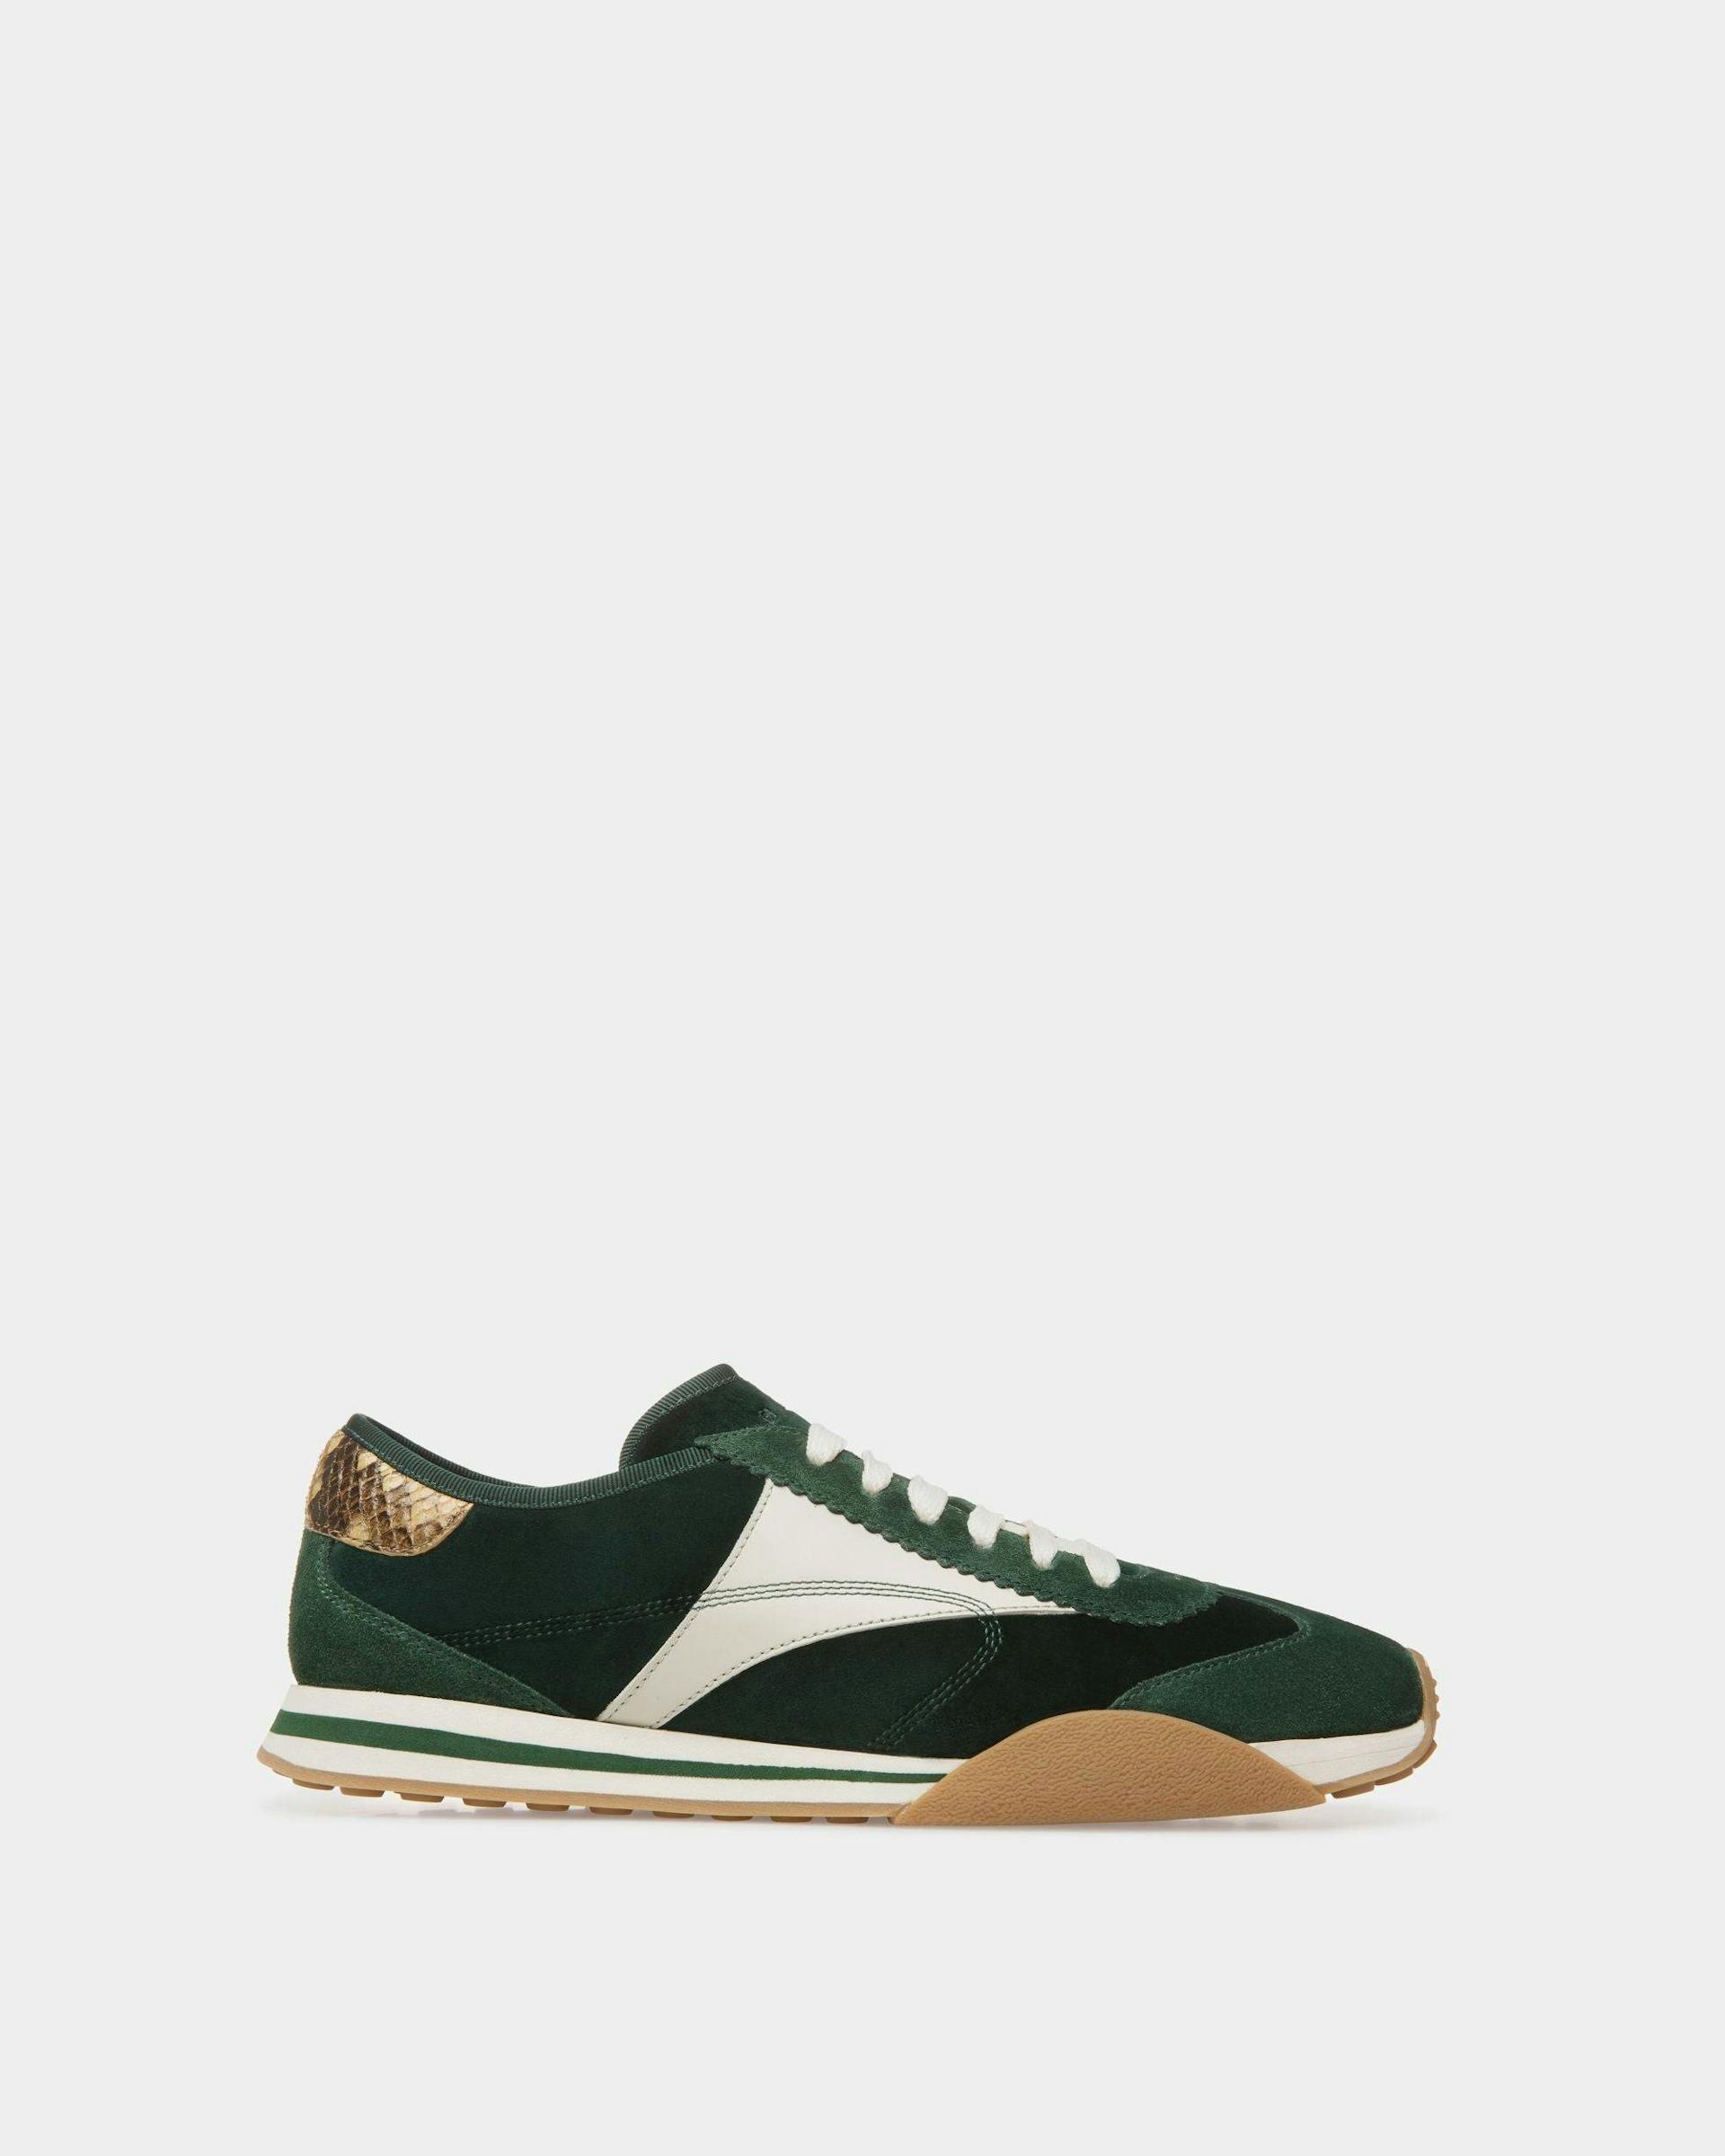 Sneaker Sussex In Pelle E Cotone Verde E Bianco Cipria - Uomo - Bally - 01